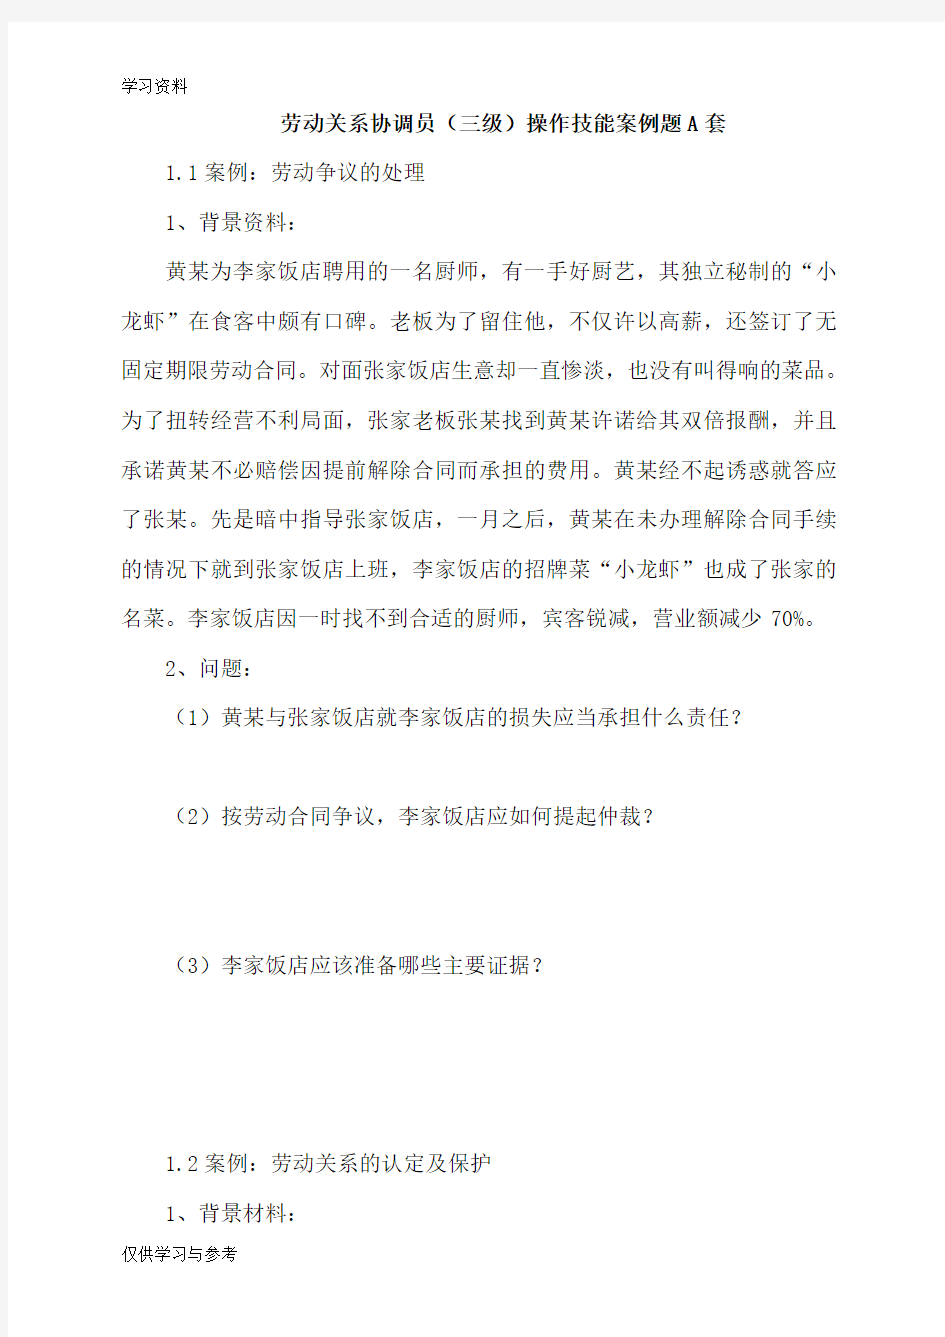 上海劳动关系协调员案例分析题A及答案讲课教案